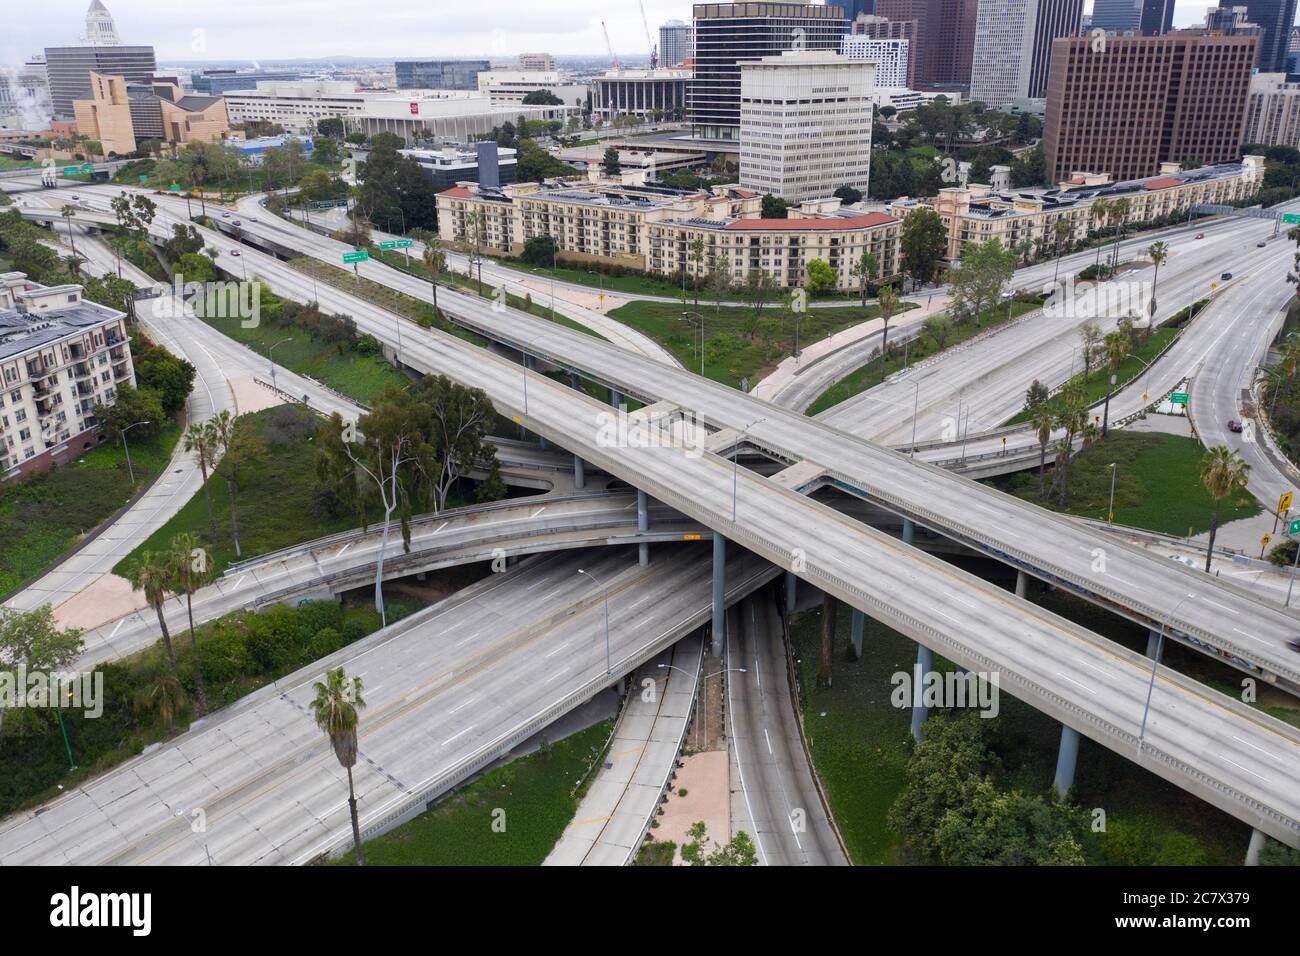 Vista aérea del famoso intercambio de cuatro niveles sin coches durante la pandemia de Covid 19 que vació las carreteras de los Ángeles Foto de stock